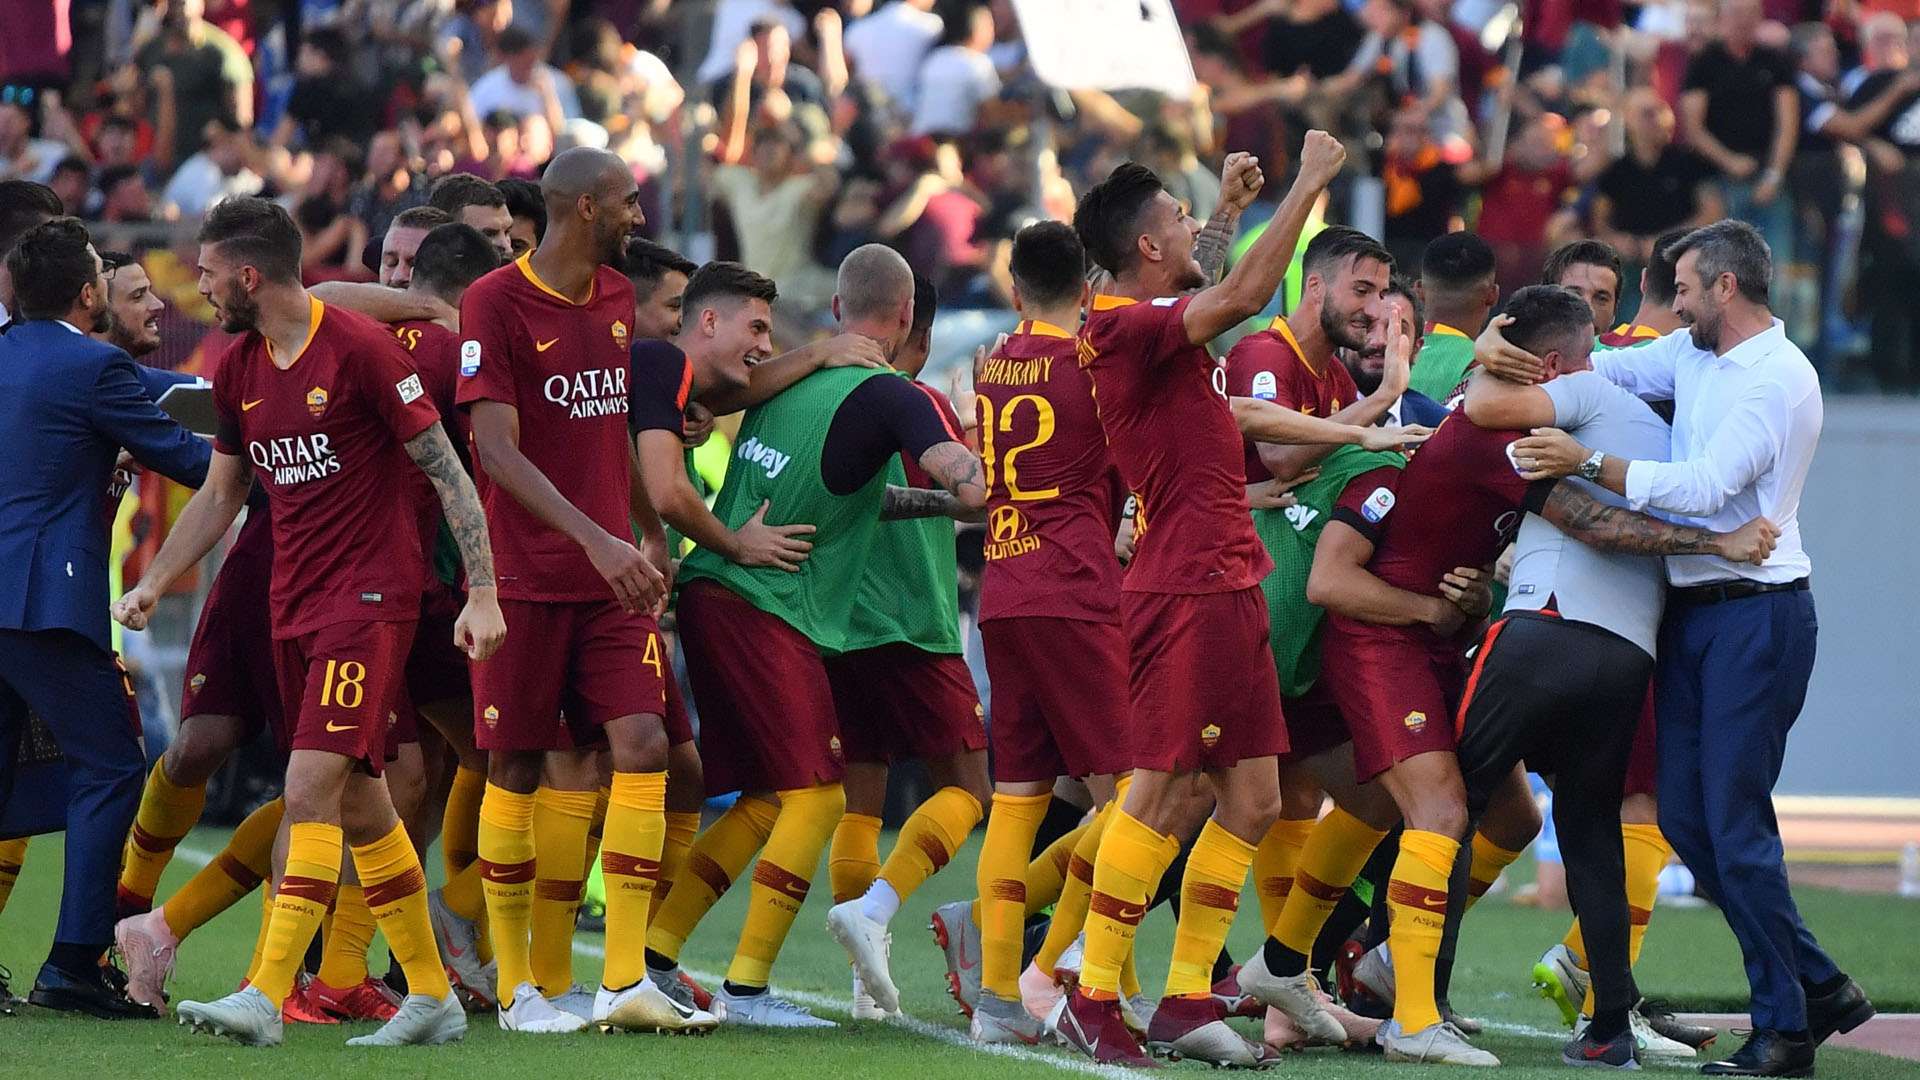 Roma celebrating vs Lazio